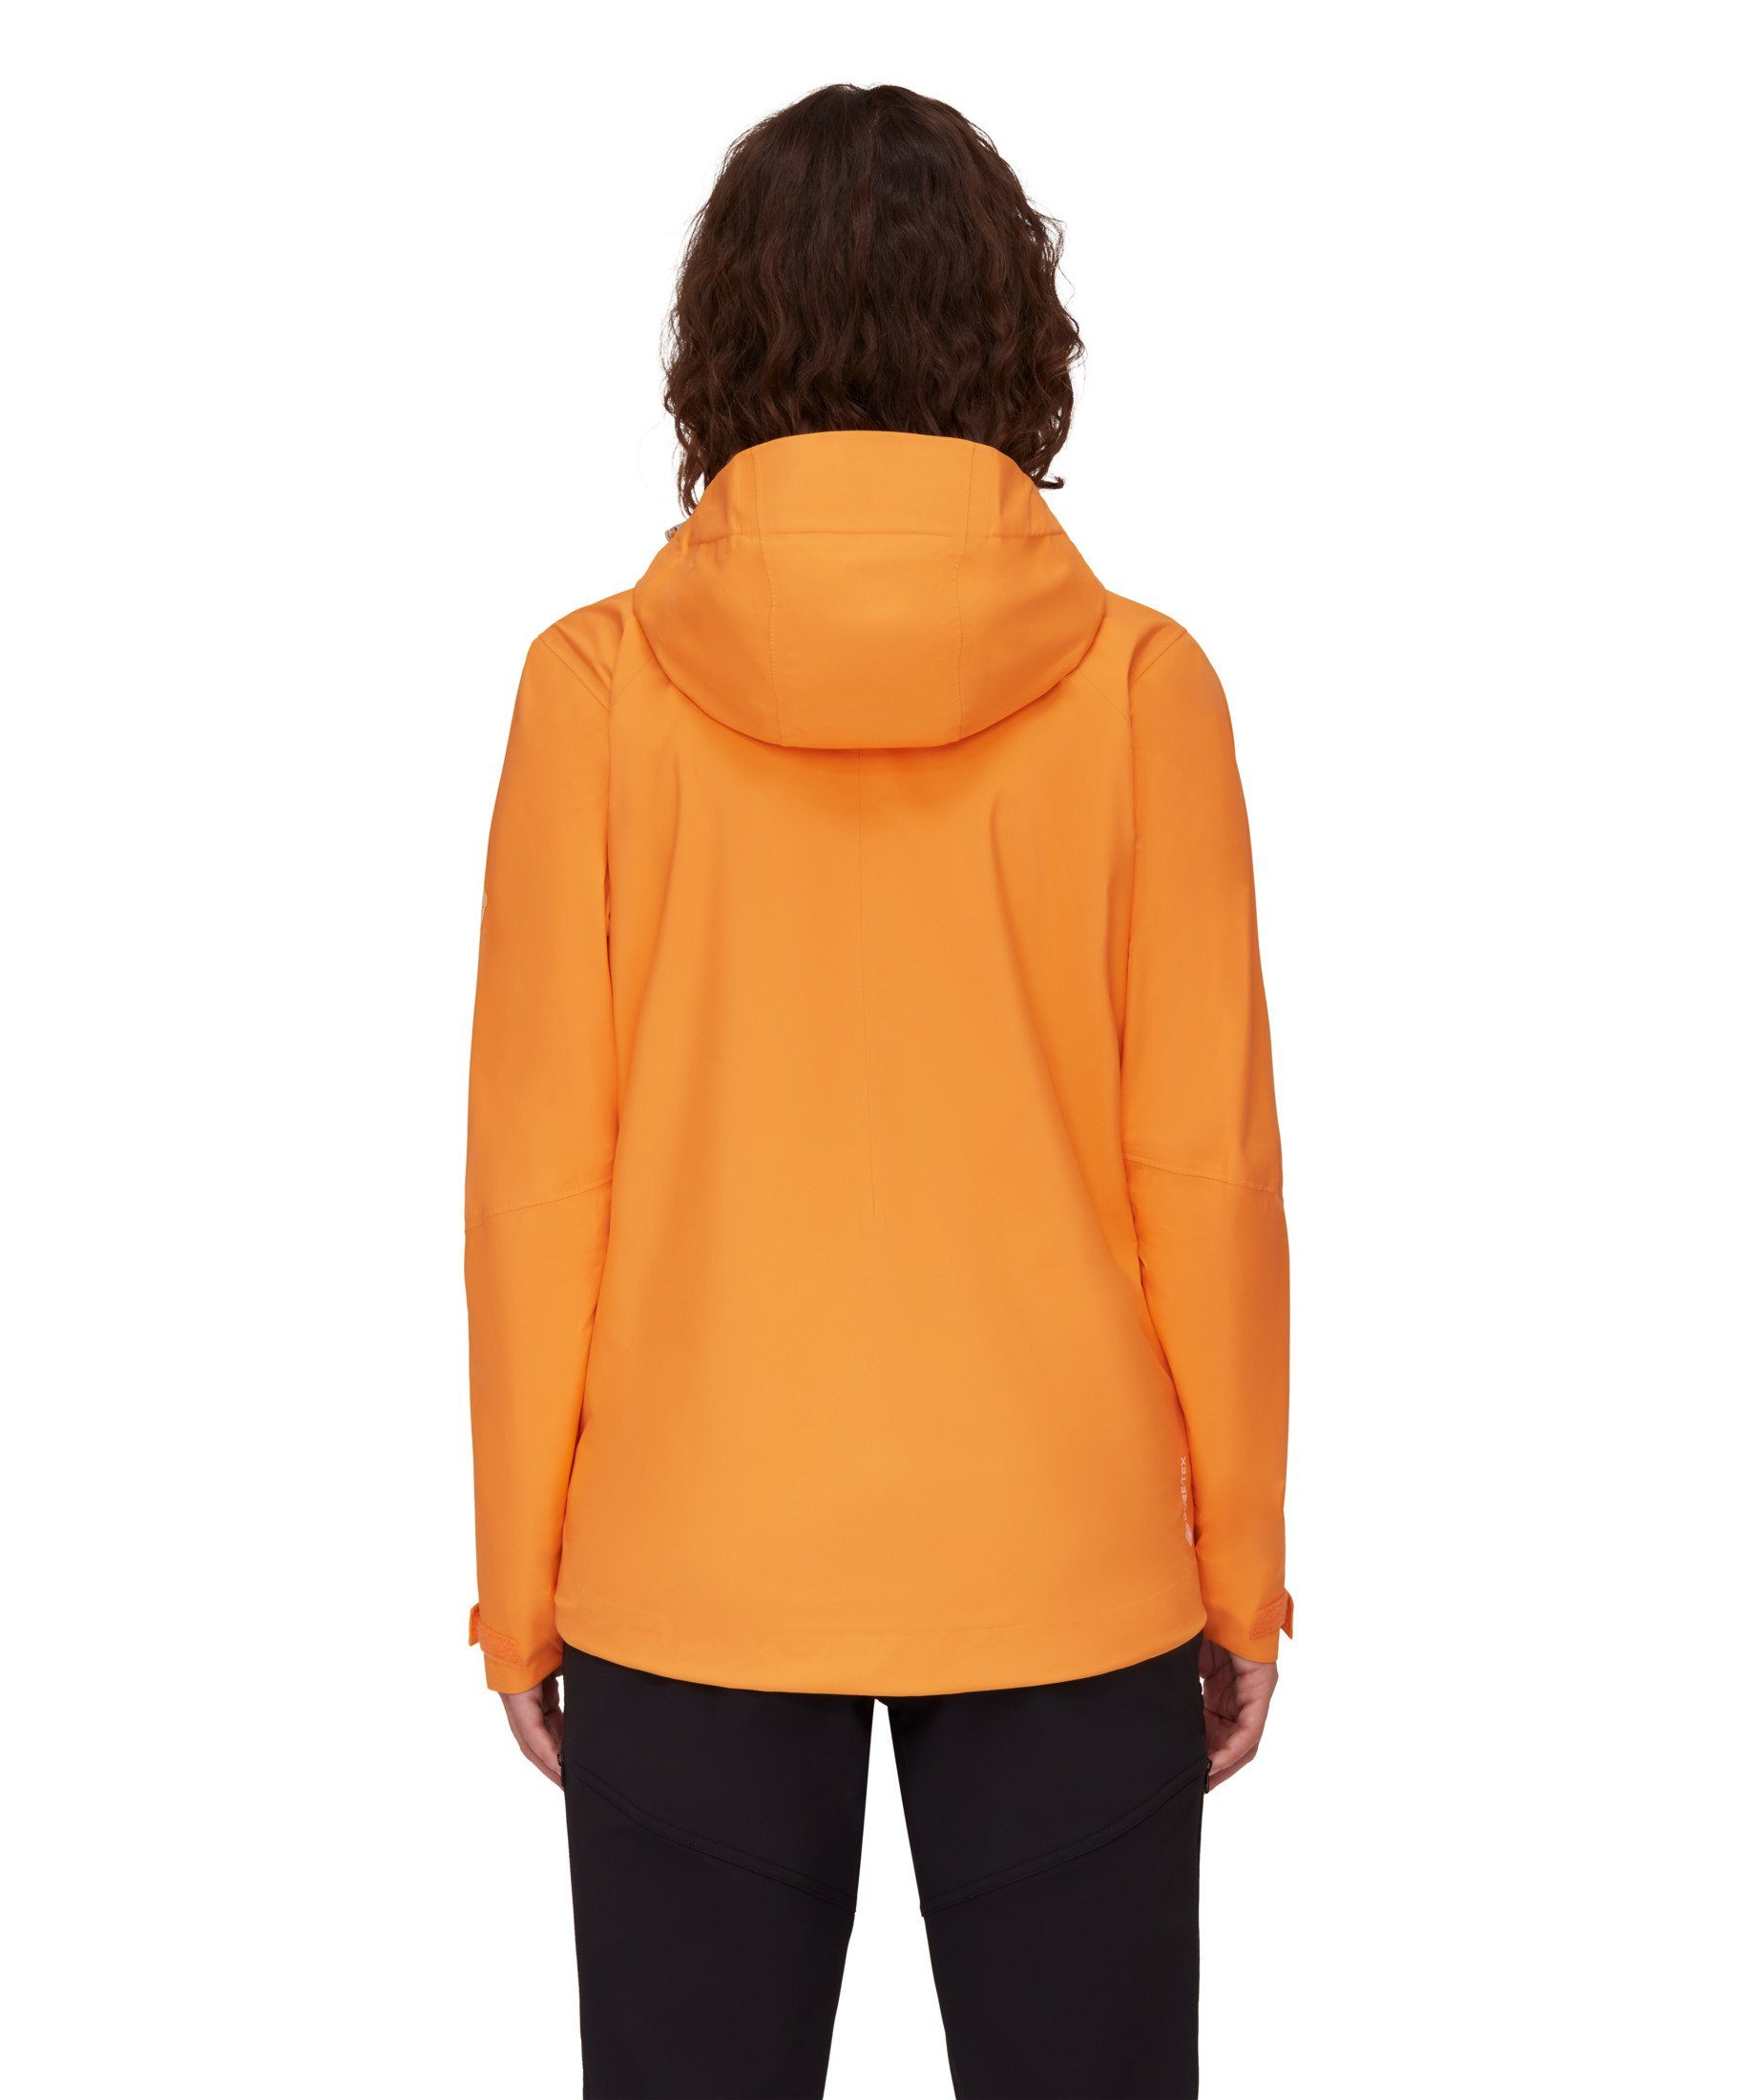 Mammut Hardshelljacke Convey tangerine Jacket Hooded Women Tour HS